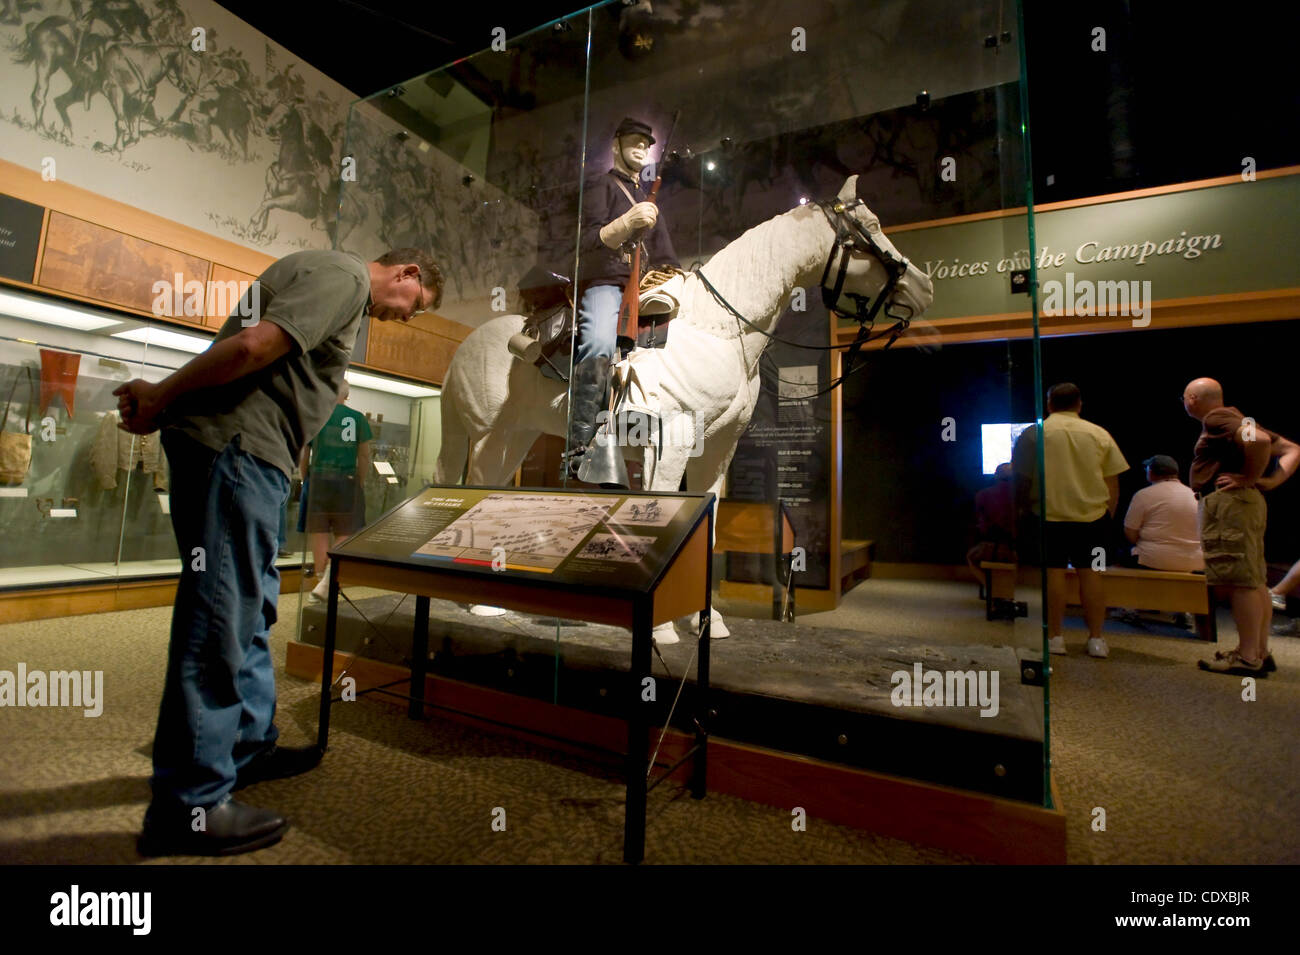 Agosto 03, 2011 - Gettysburg, PA, Stati Uniti d'America - tour dei visitatori del museo di Gettysburg in città nota per la guerra civile americana la battaglia con il maggior numero totale di vittime. Il 2013 segnerà il centocinquantesimo anniversario della battaglia di Gettysburg. Foto Stock